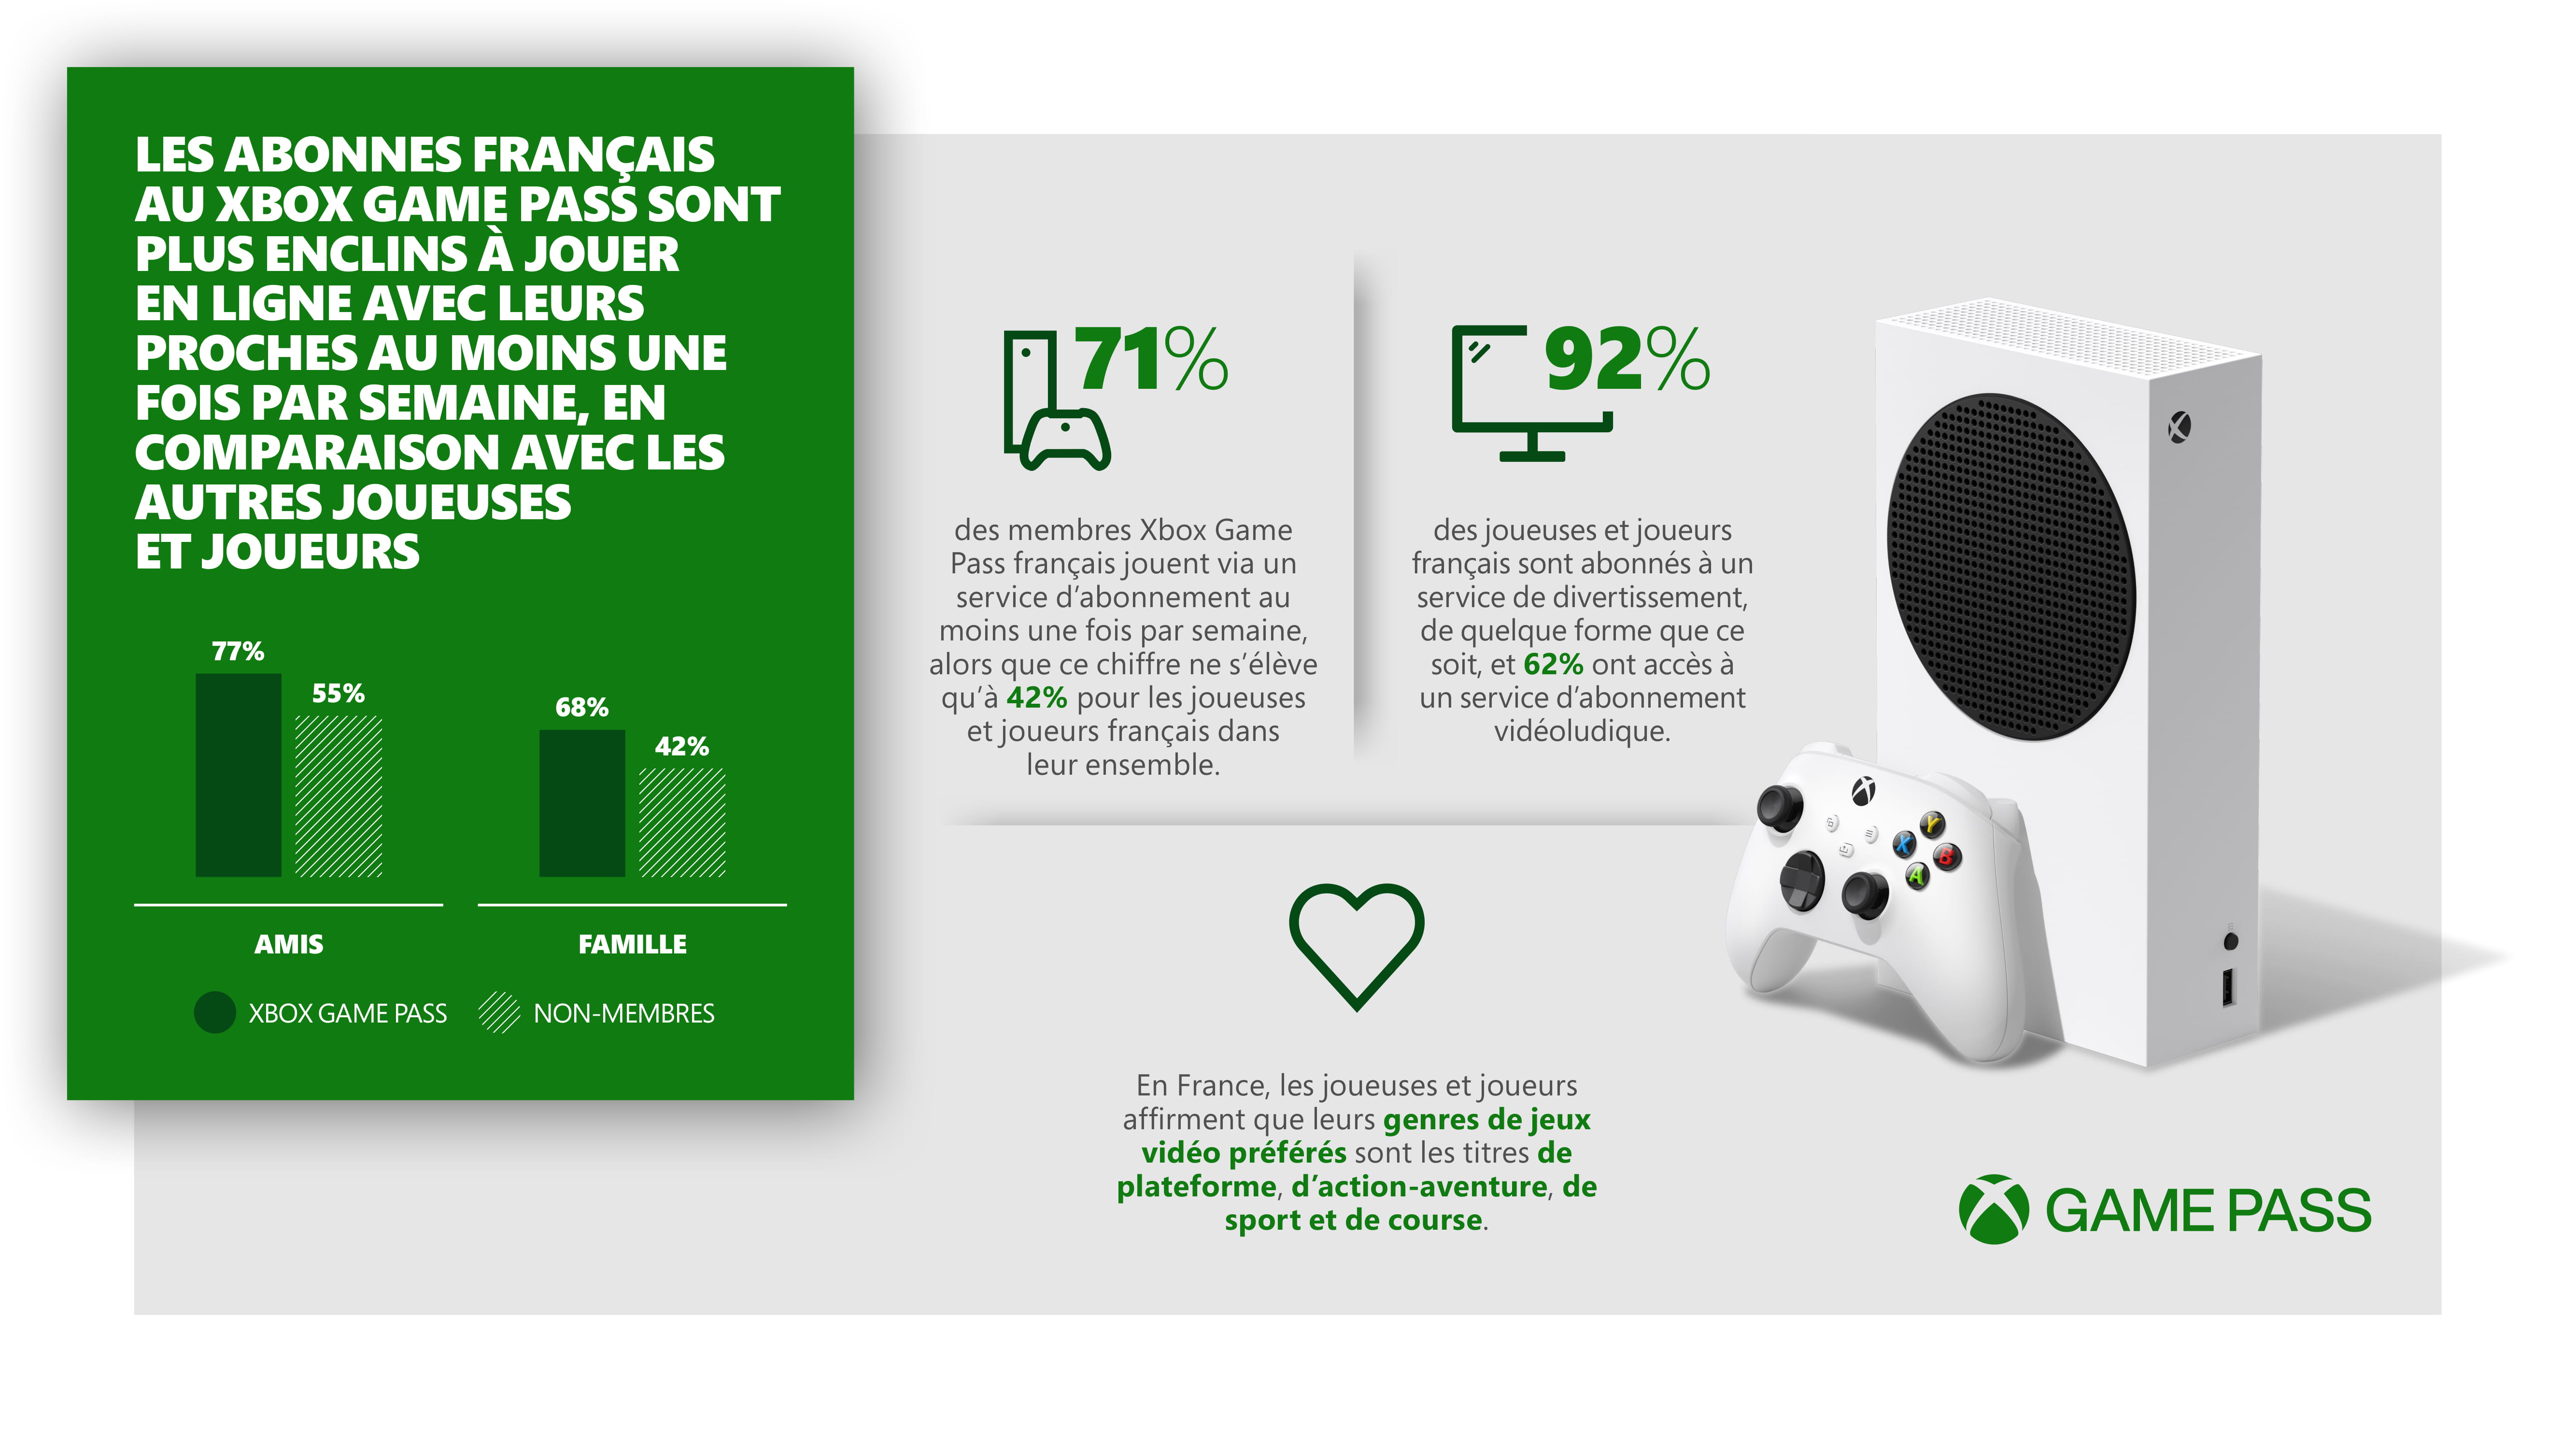 Le Xbox Game Pass aide les joueuses et les joueurs français à rester connectés